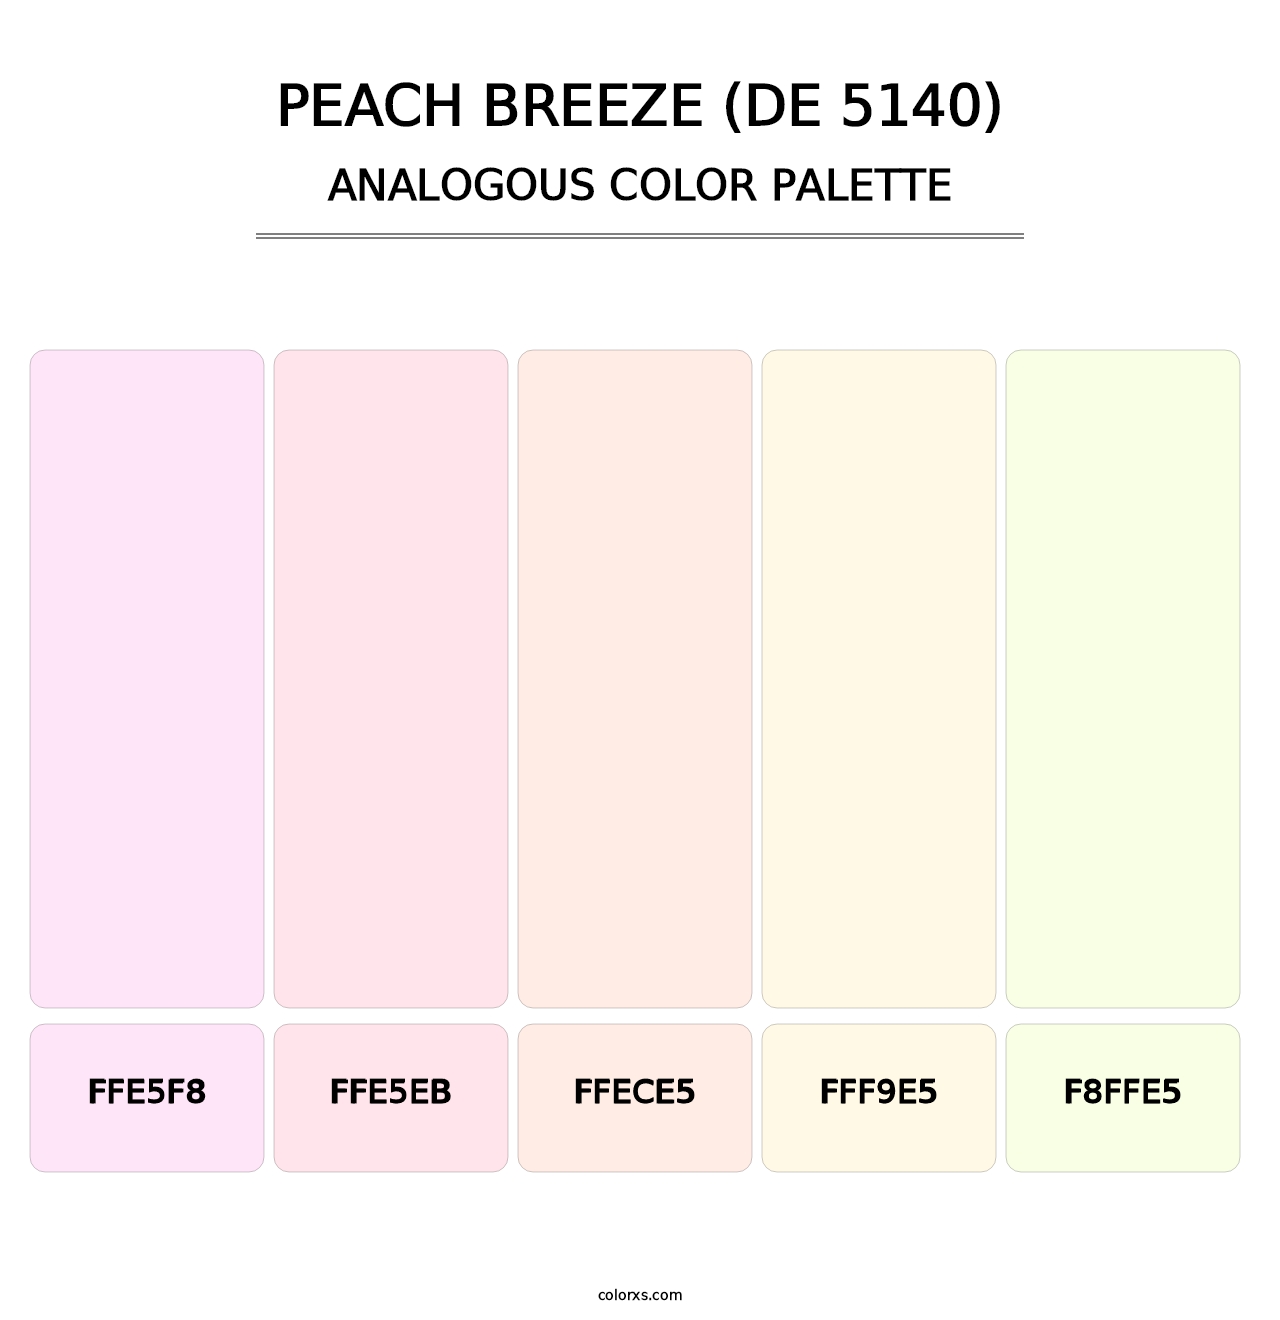 Peach Breeze (DE 5140) - Analogous Color Palette